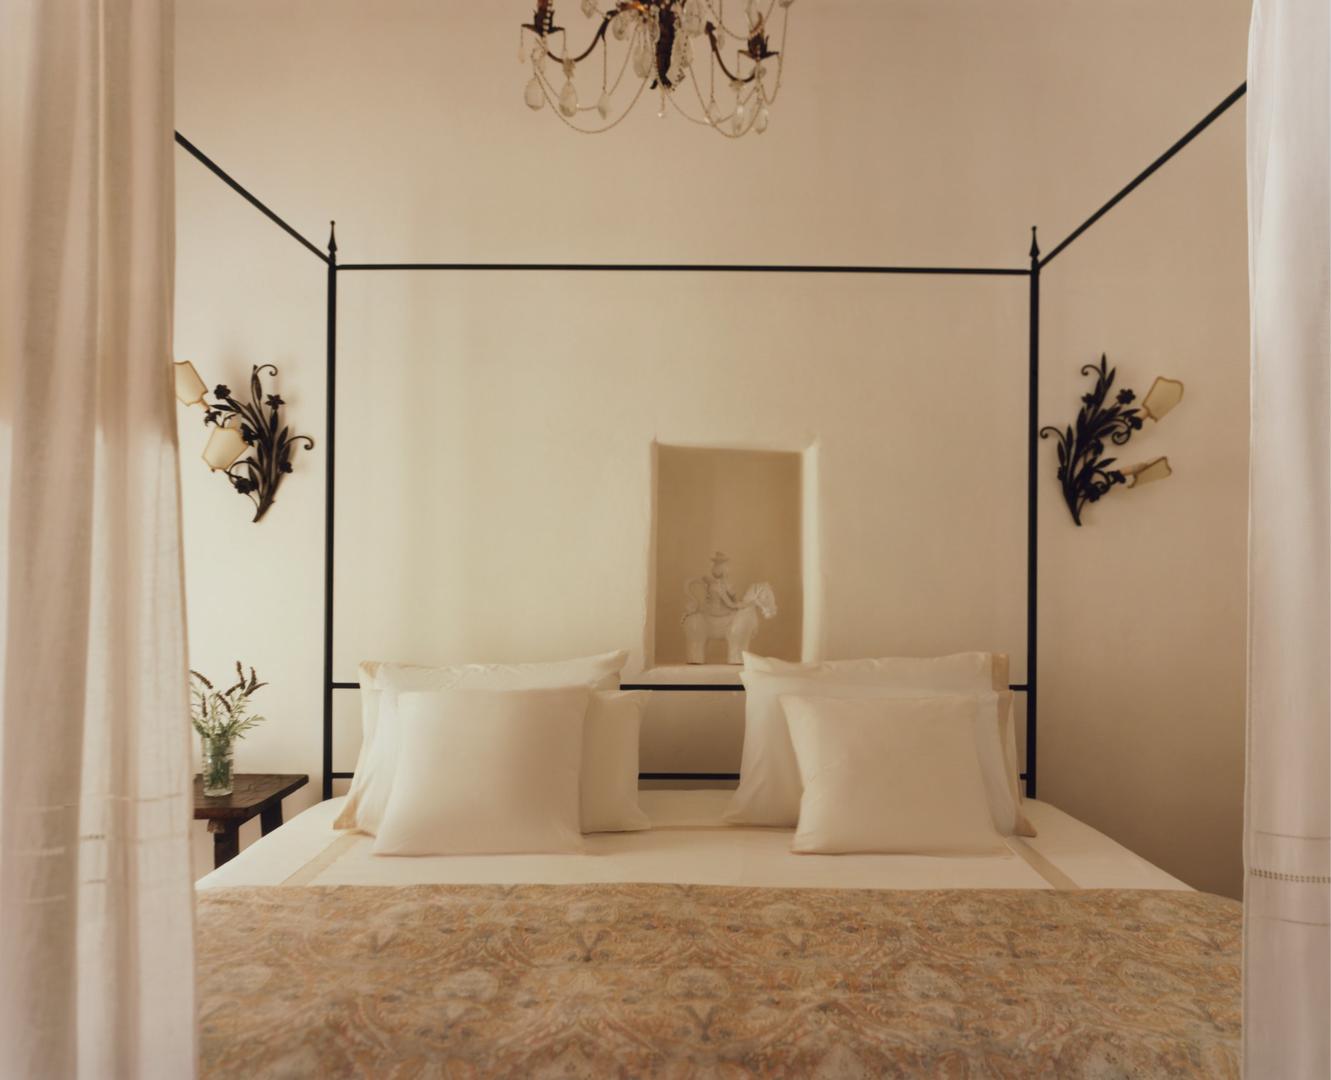 Glavna spavaća soba slijedi filozofiju uređenja ostatka interijera